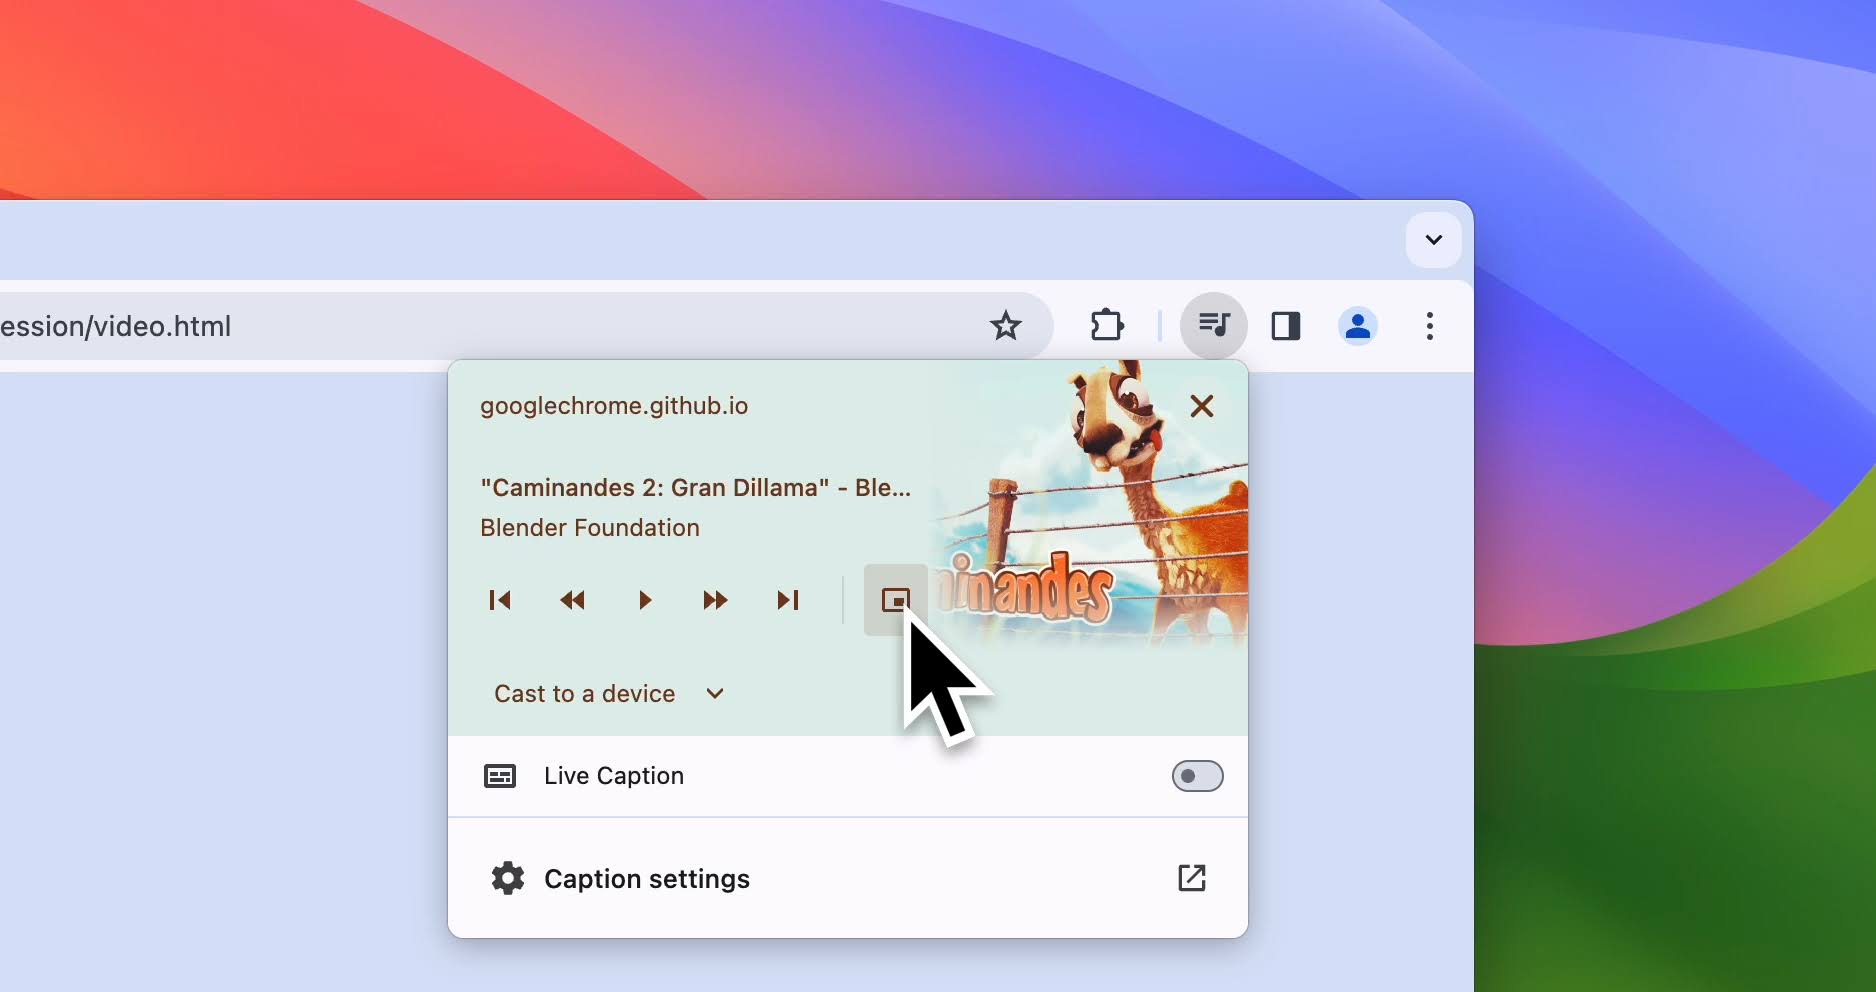 Zrzut ekranu przedstawiający sterowanie multimediami w przeglądarce Chrome z kursorem wskazującym tryb użytkownika w trybie obraz w obrazie.